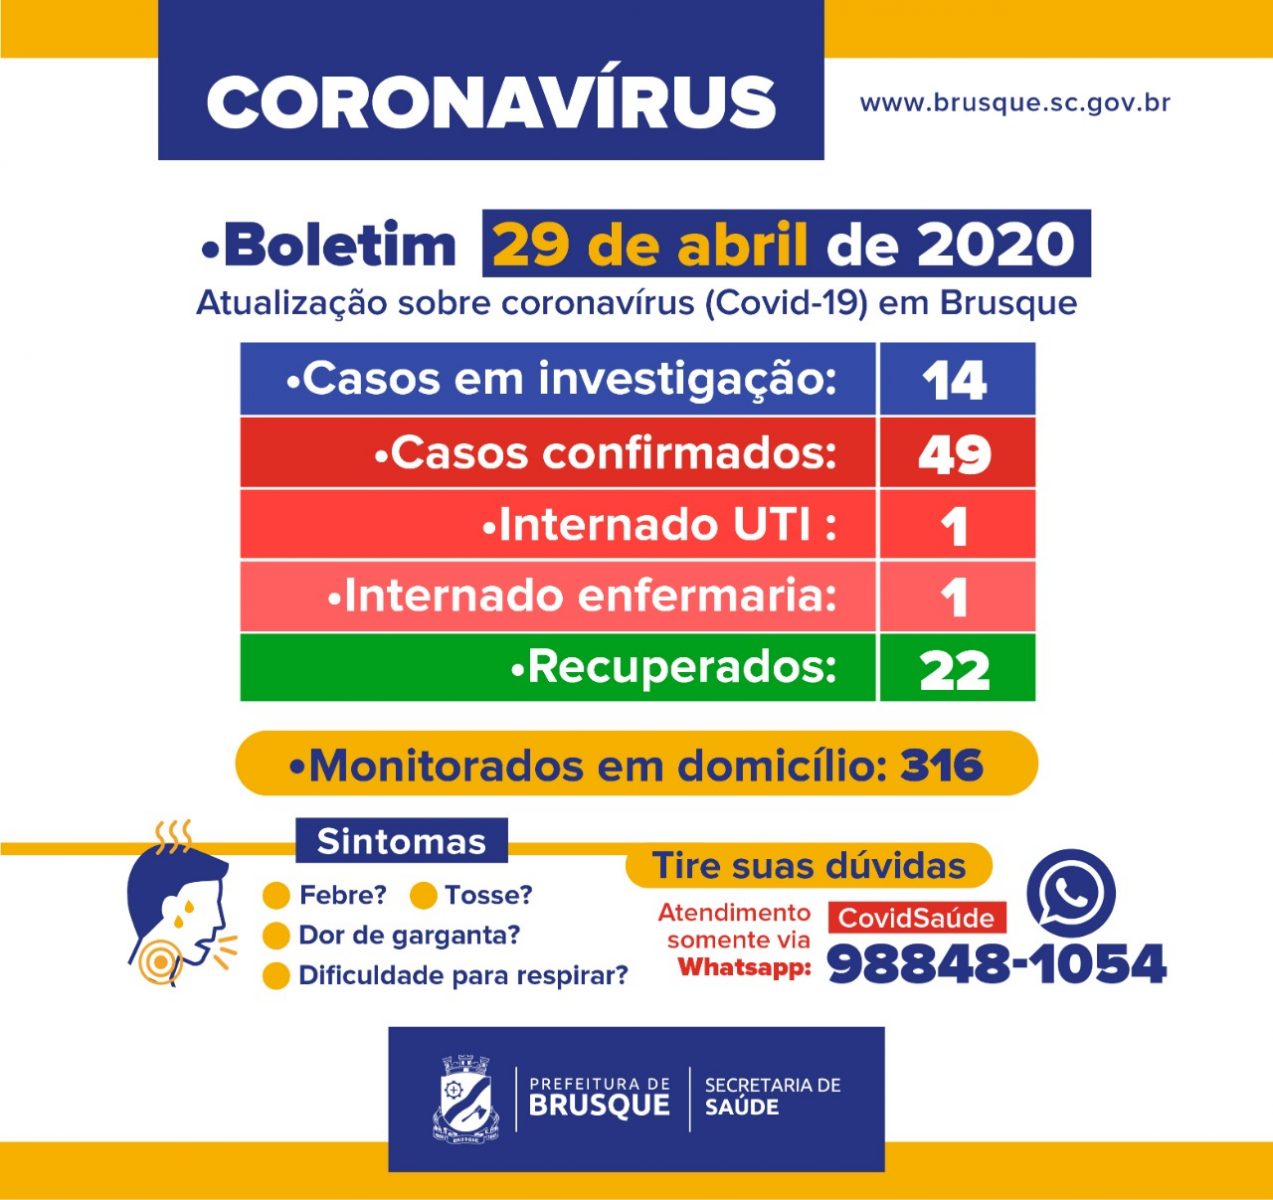 Brusque permanece com 49 casos confirmados do novo coronavírus